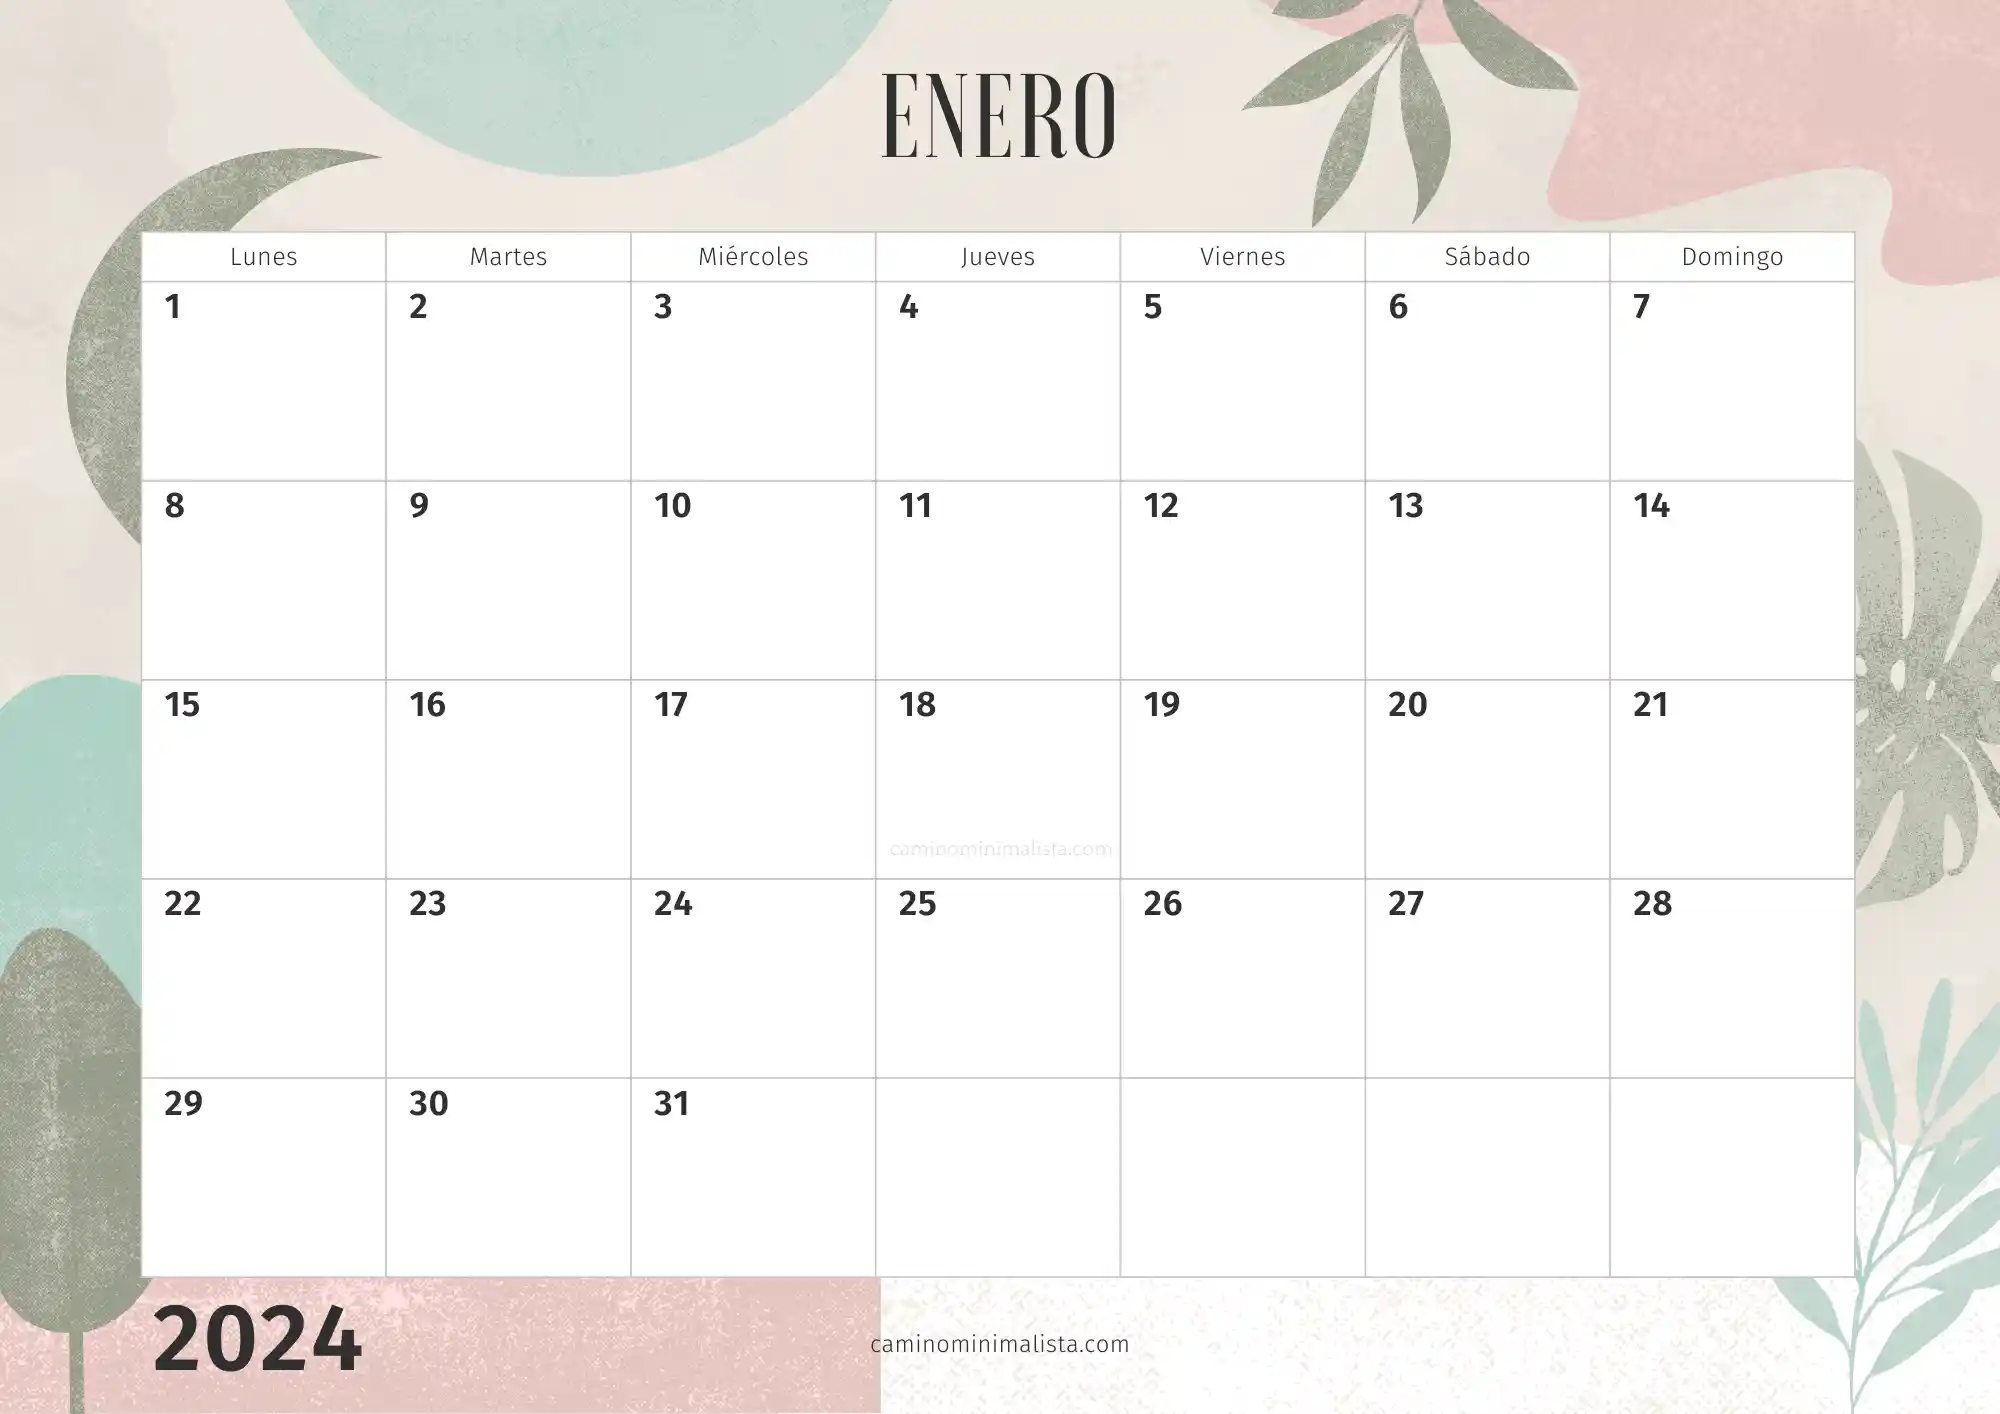 Calendario Enero 2024 decorado bonito